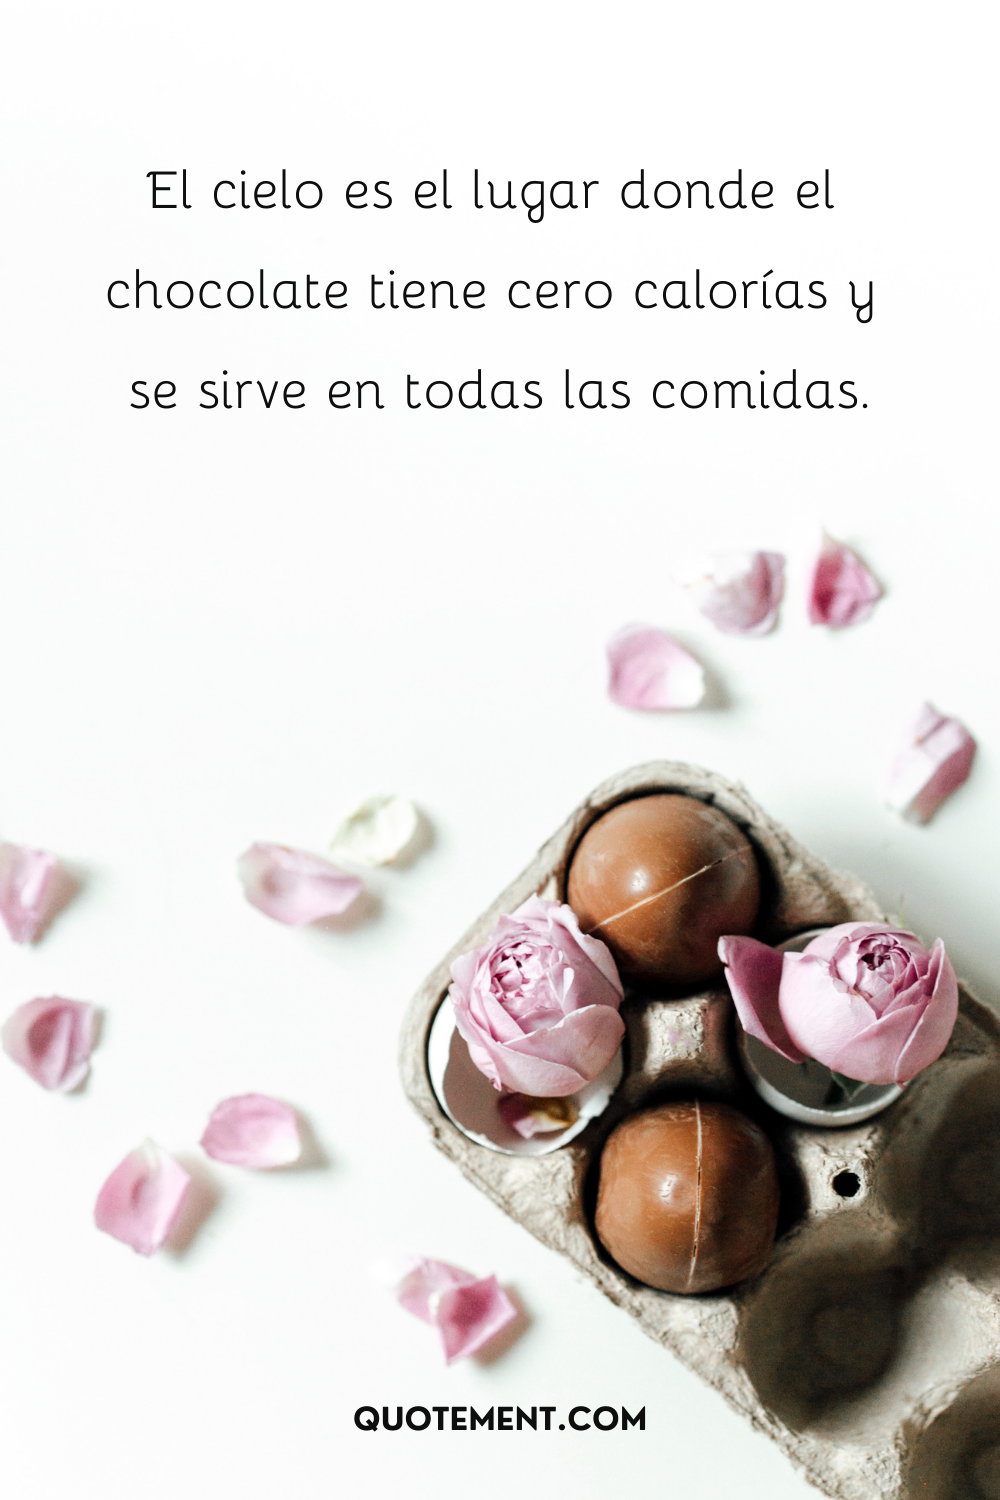 El cielo es el lugar donde el chocolate tiene cero calorías y se sirve en todas las comidas.